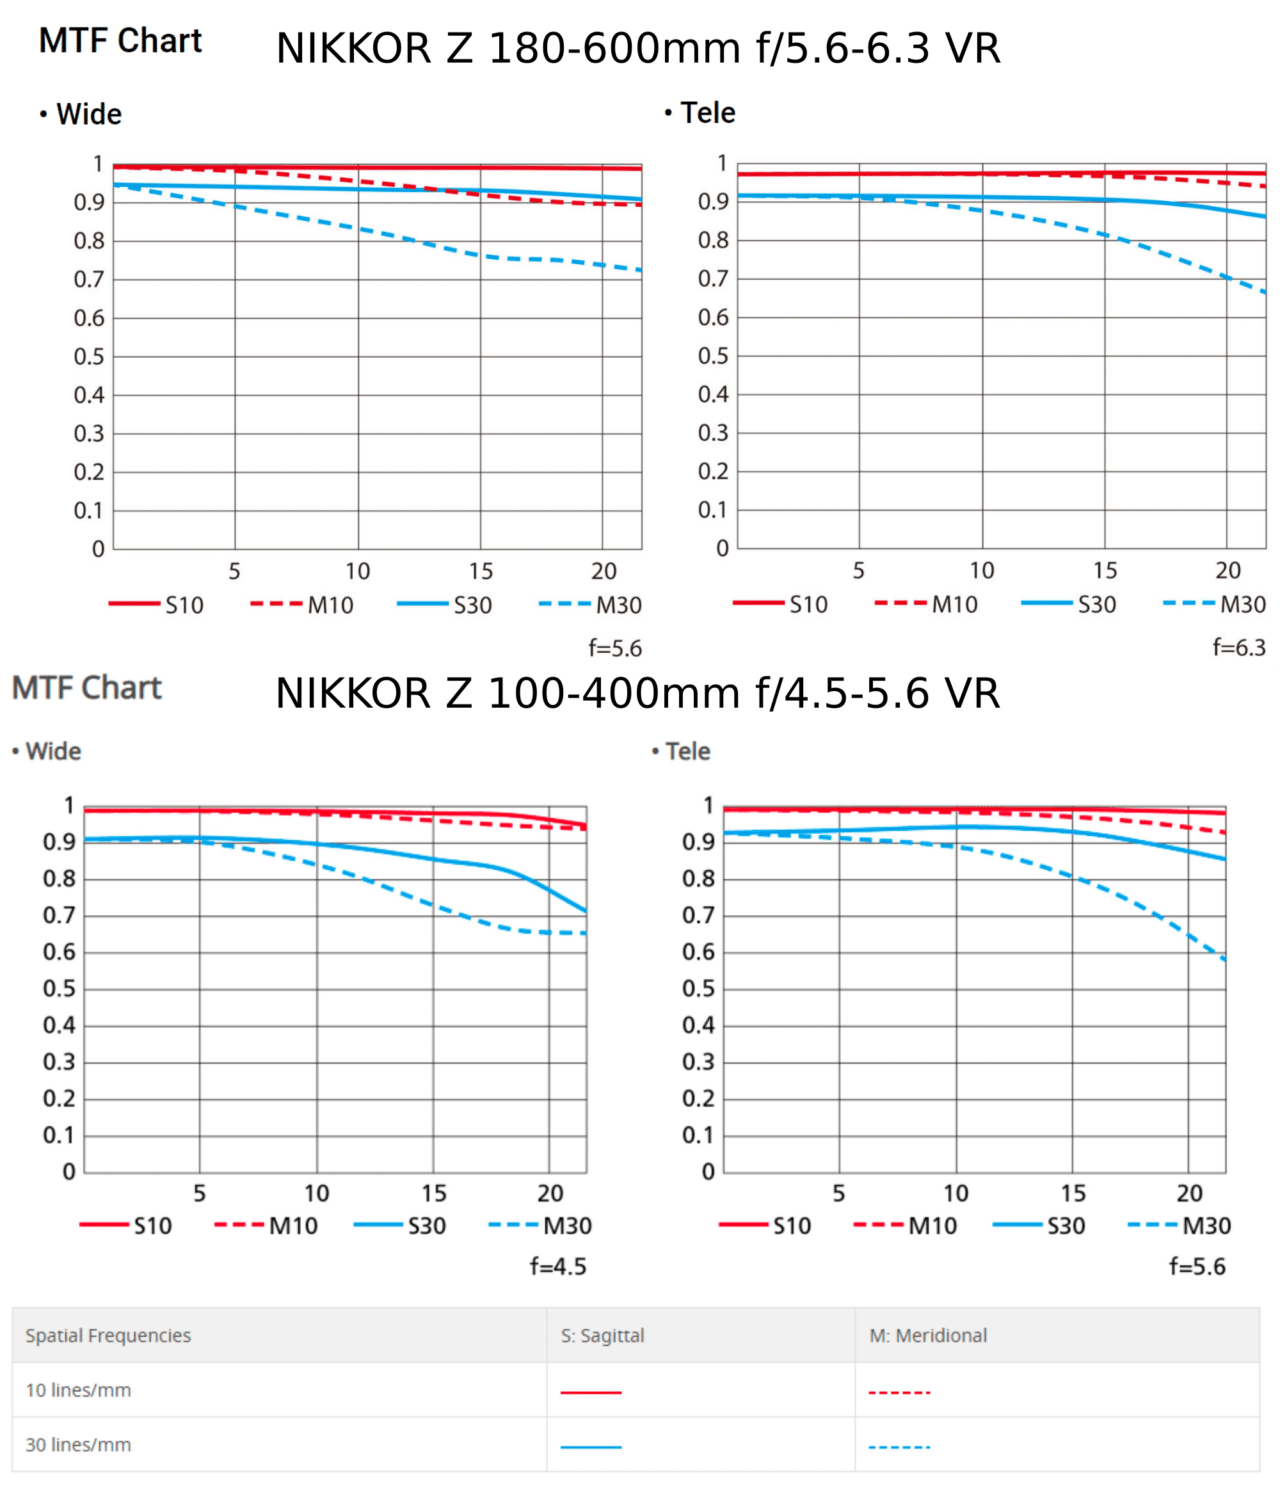 Nikkor Z 180-600mm Versus the Nikkor Z 100-400mm, mtf comparison